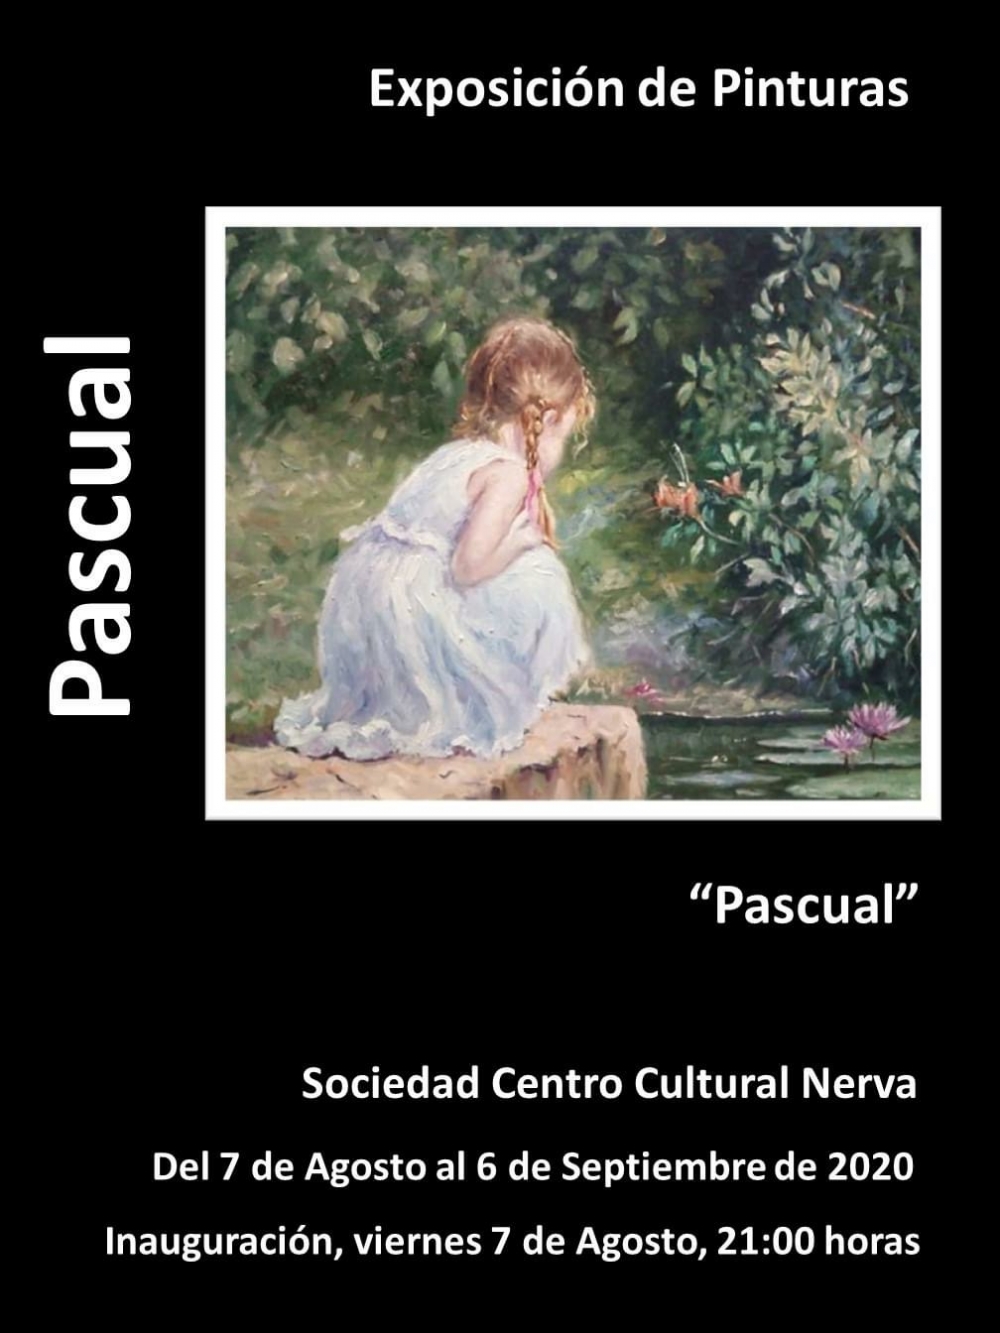 Exposición de Pintura de Pascual